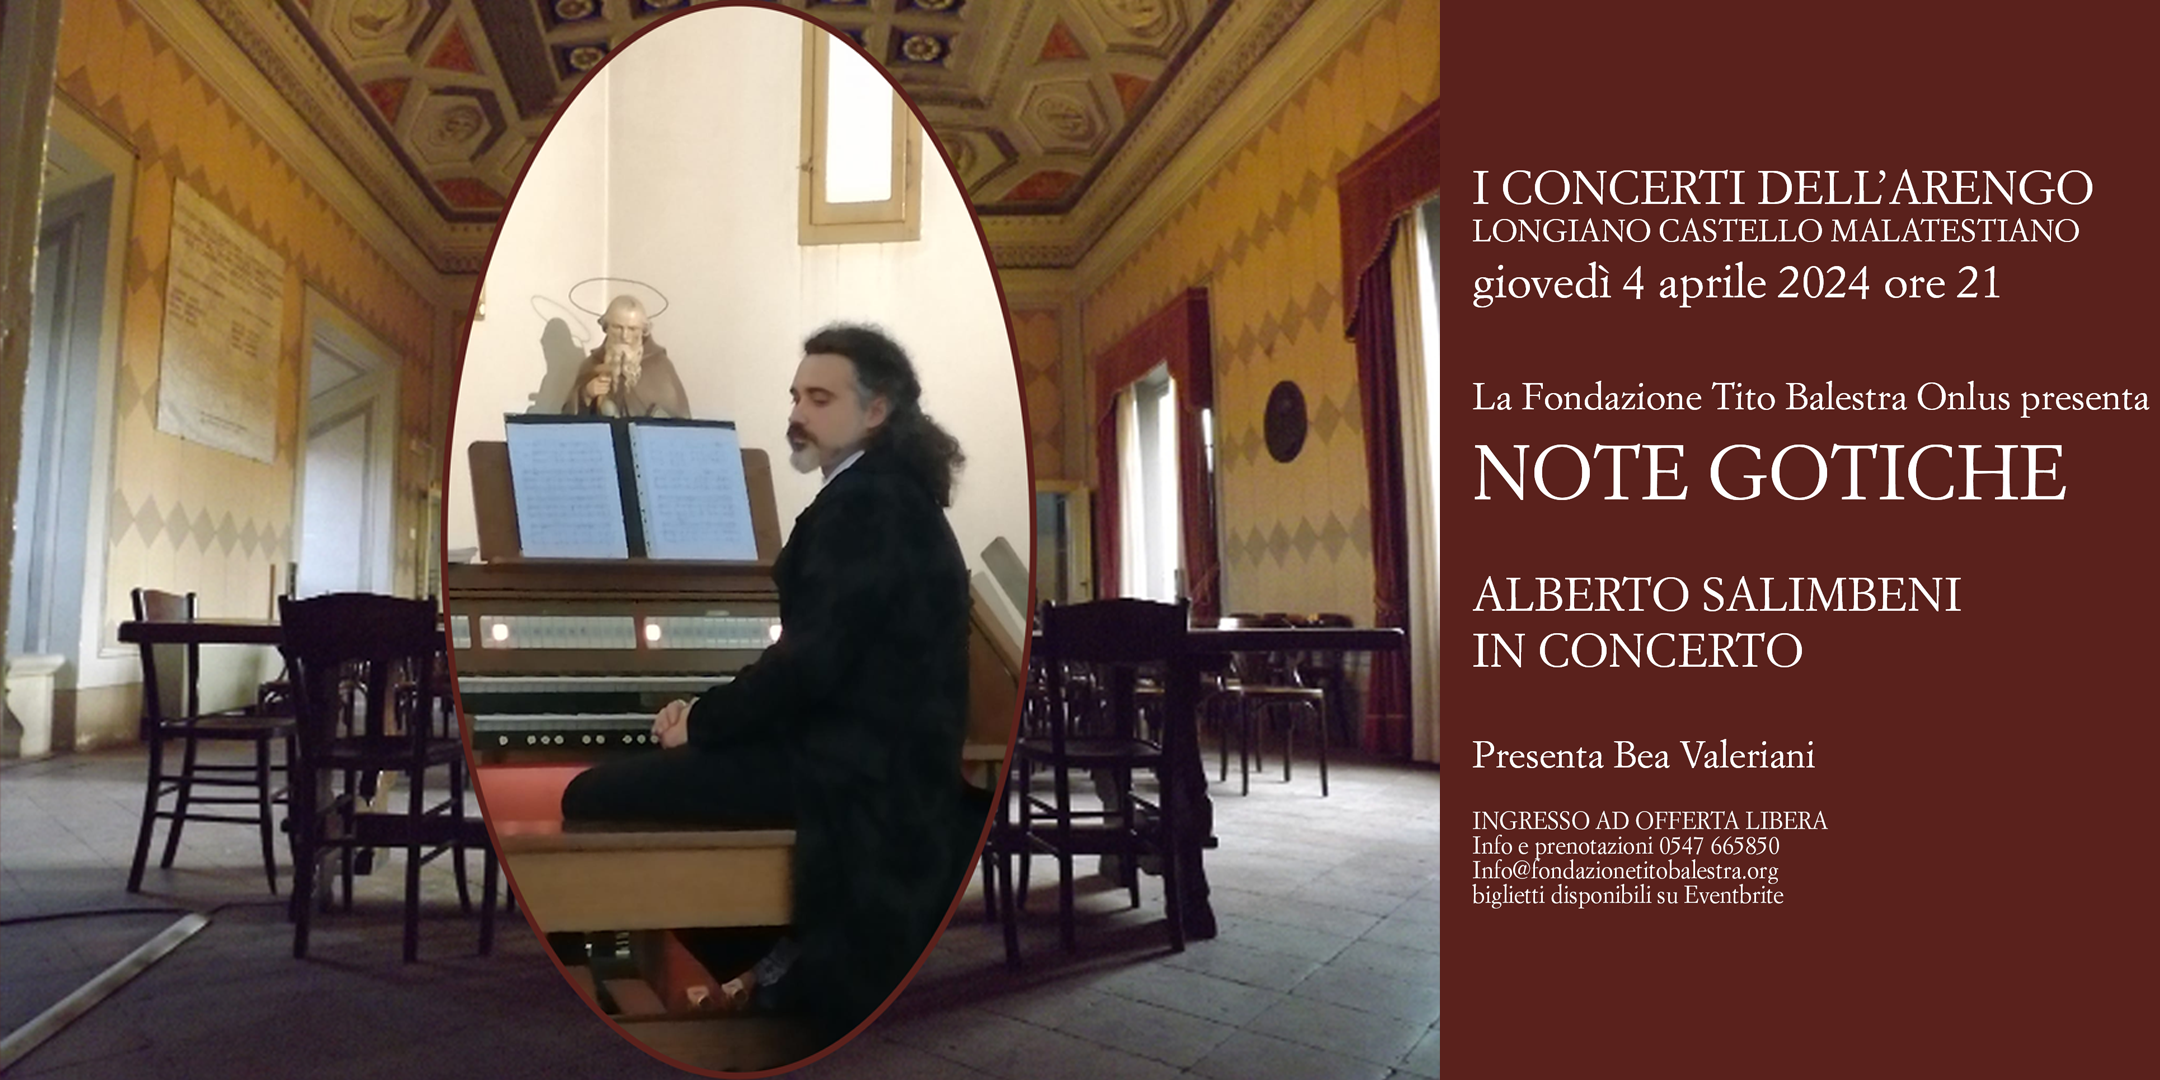 Concerti dell'Arengo - NOTE GOTICHE. Alberto Salimbeni i concerto.